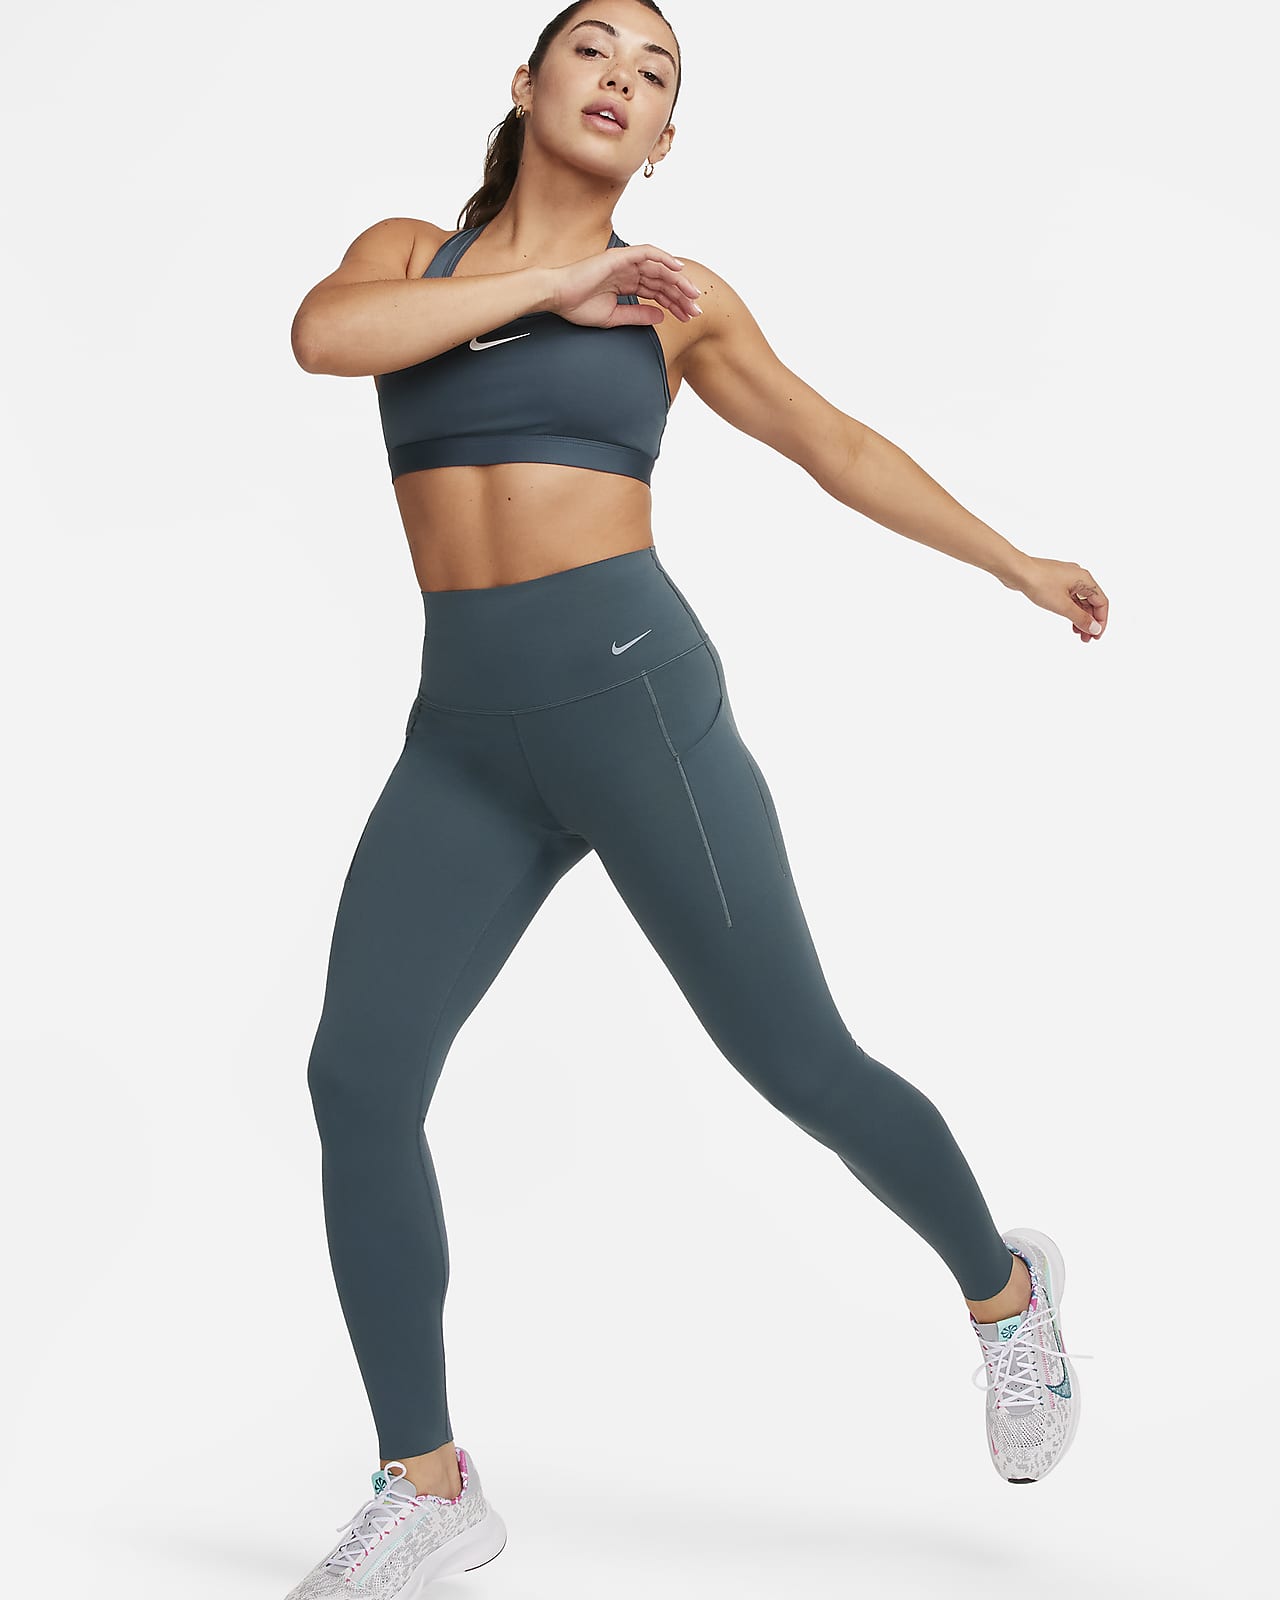 Dámské legíny Nike Universa v plné délce, s vysokým pasem, střední oporou a kapsami